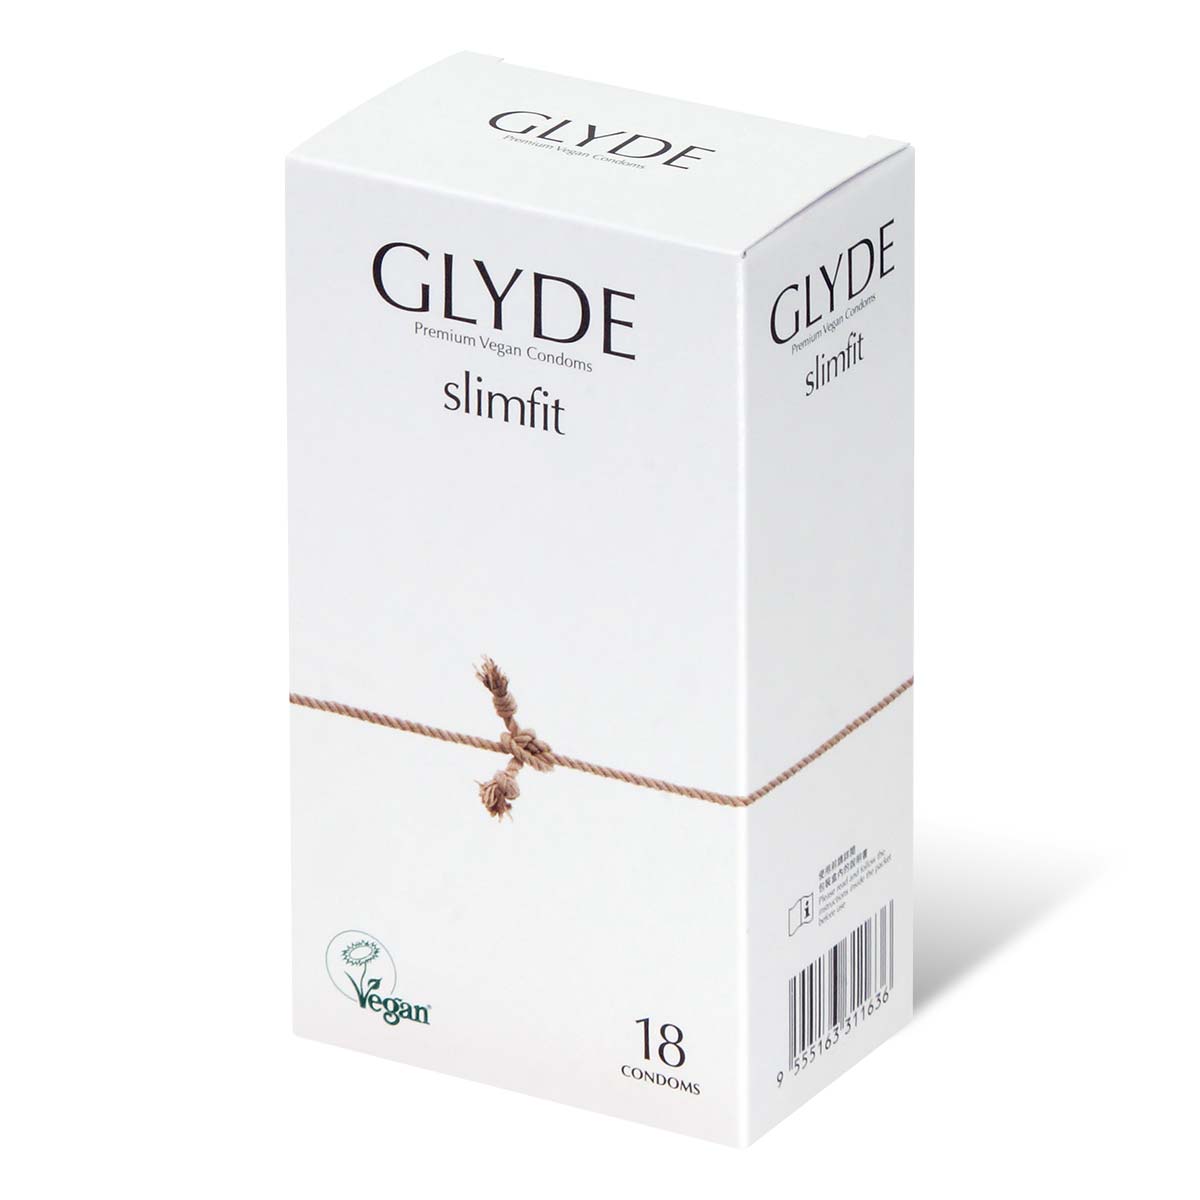 Glyde 格蕾迪 素食主义安全套 紧身 49mm 18 片装 乳胶安全套-p_1